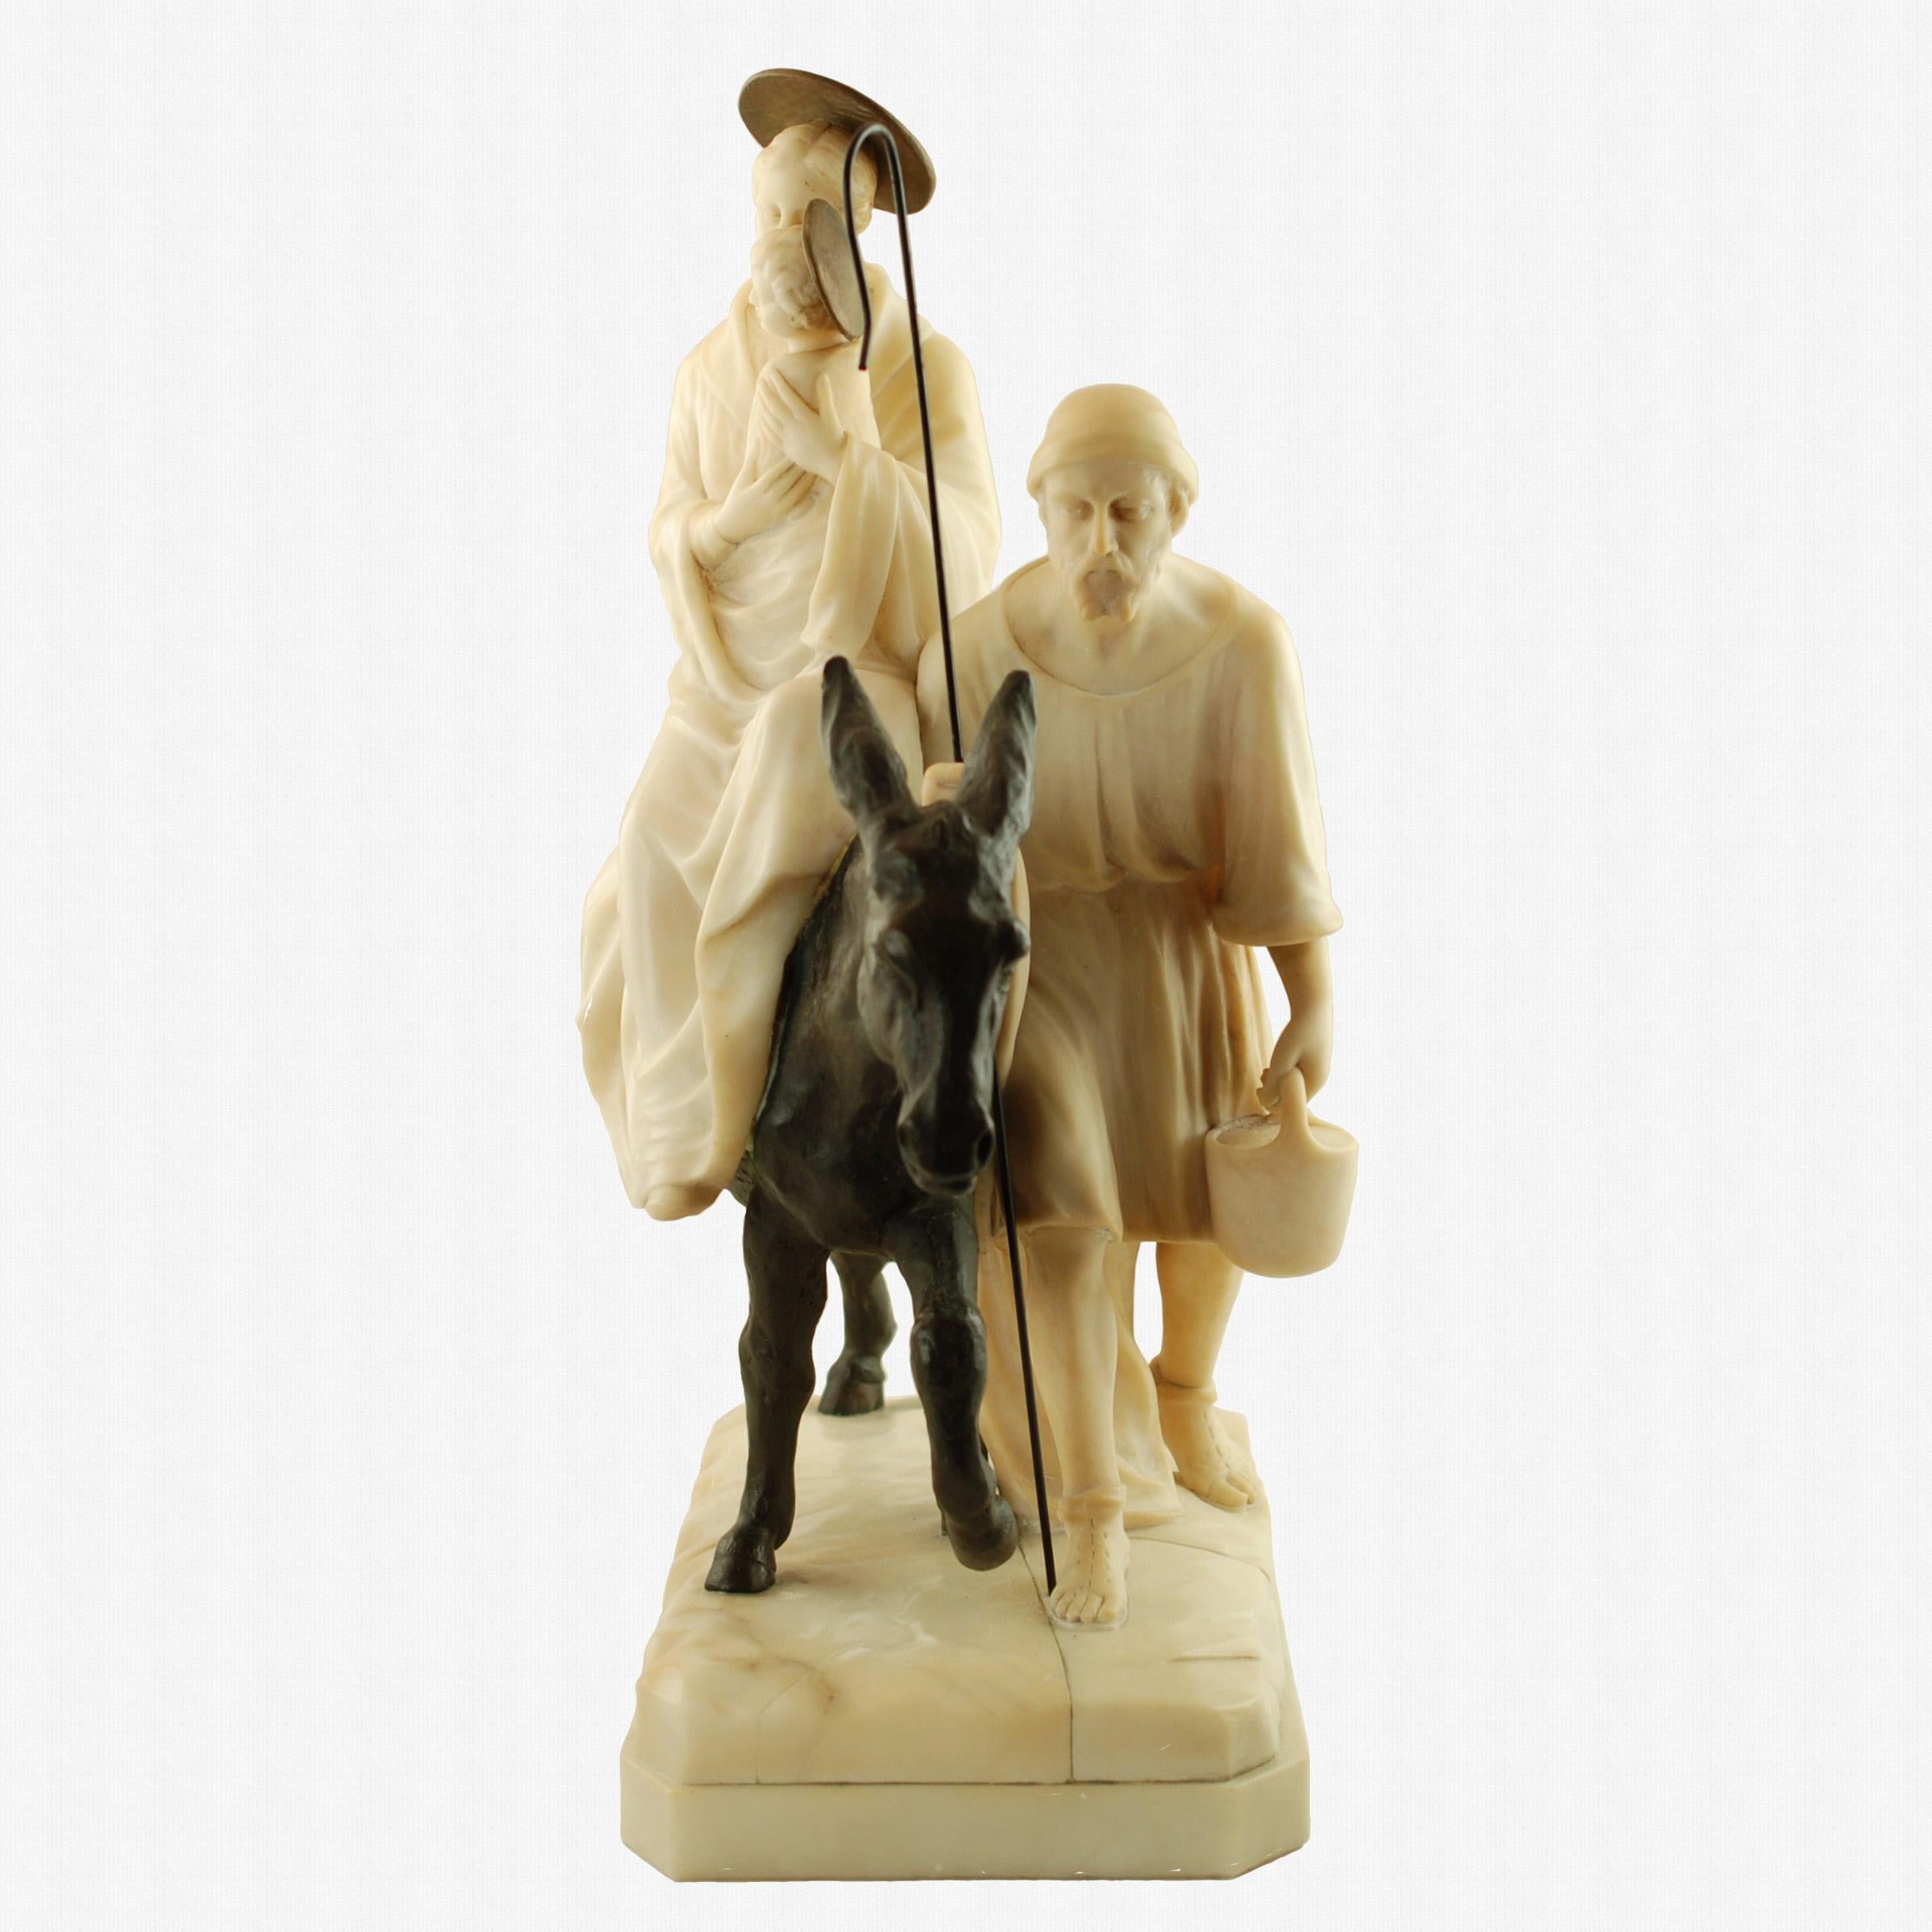 Ce groupe de figures en albâtre, bronze et marbre a été créé par le célèbre sculpteur italien Emilio P. Fiaschi (1858 - 1941).  La sculpture représente la fuite en Égypte de la Sainte Famille et a été réalisée avec le talent et la sensibilité